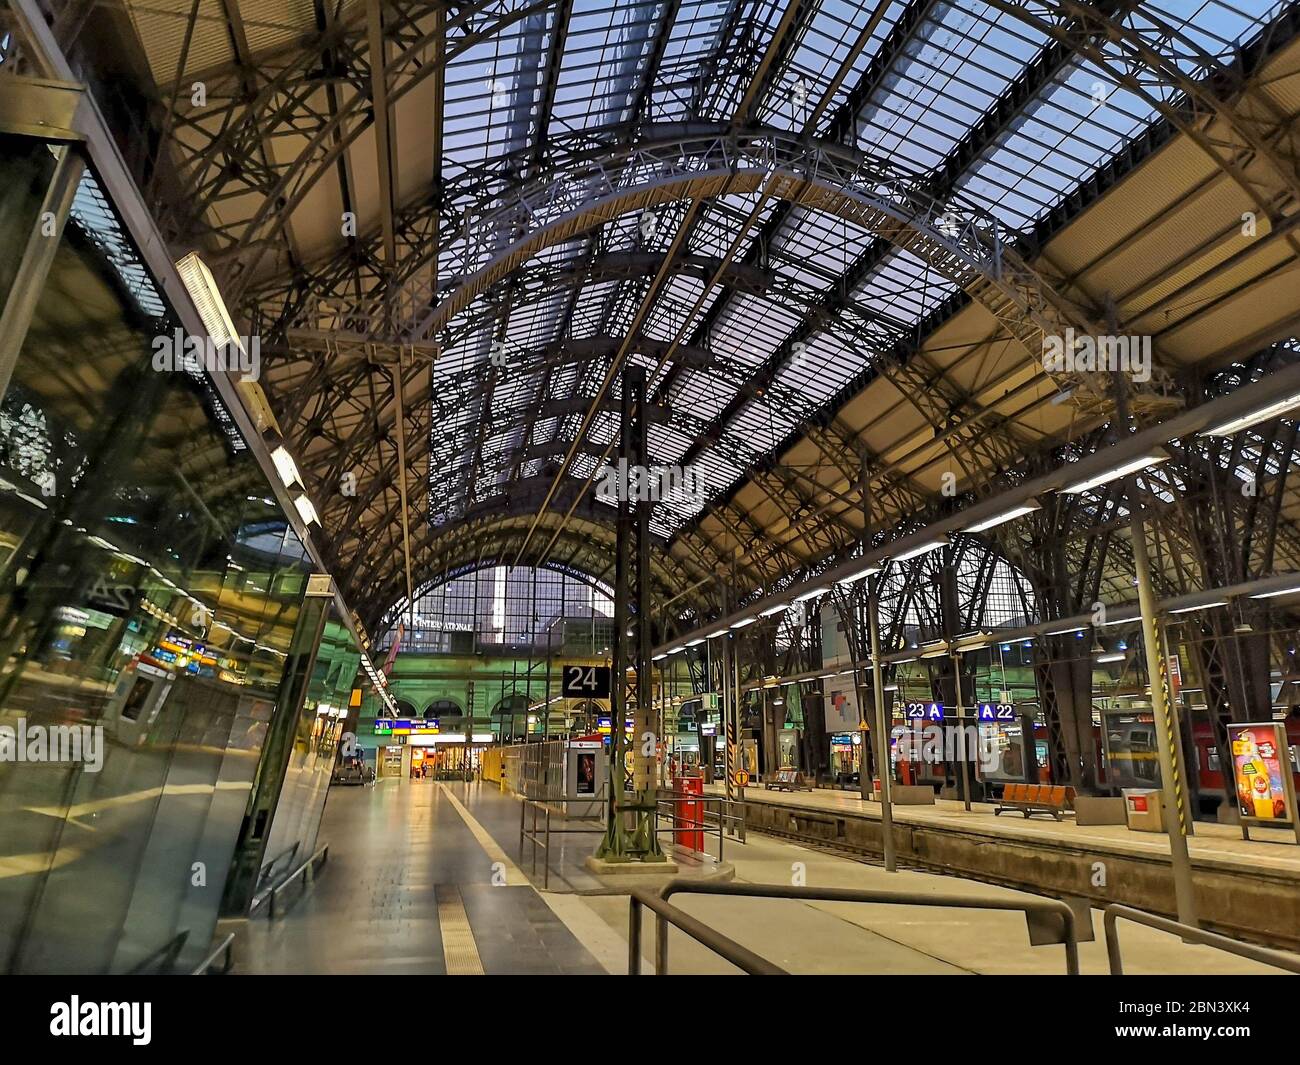 All'interno della stazione ferroviaria di Francoforte, Germania, architettura con grande sala in metallo, fermata del treno alla piattaforma e vari distributori automatici nella Foto Stock